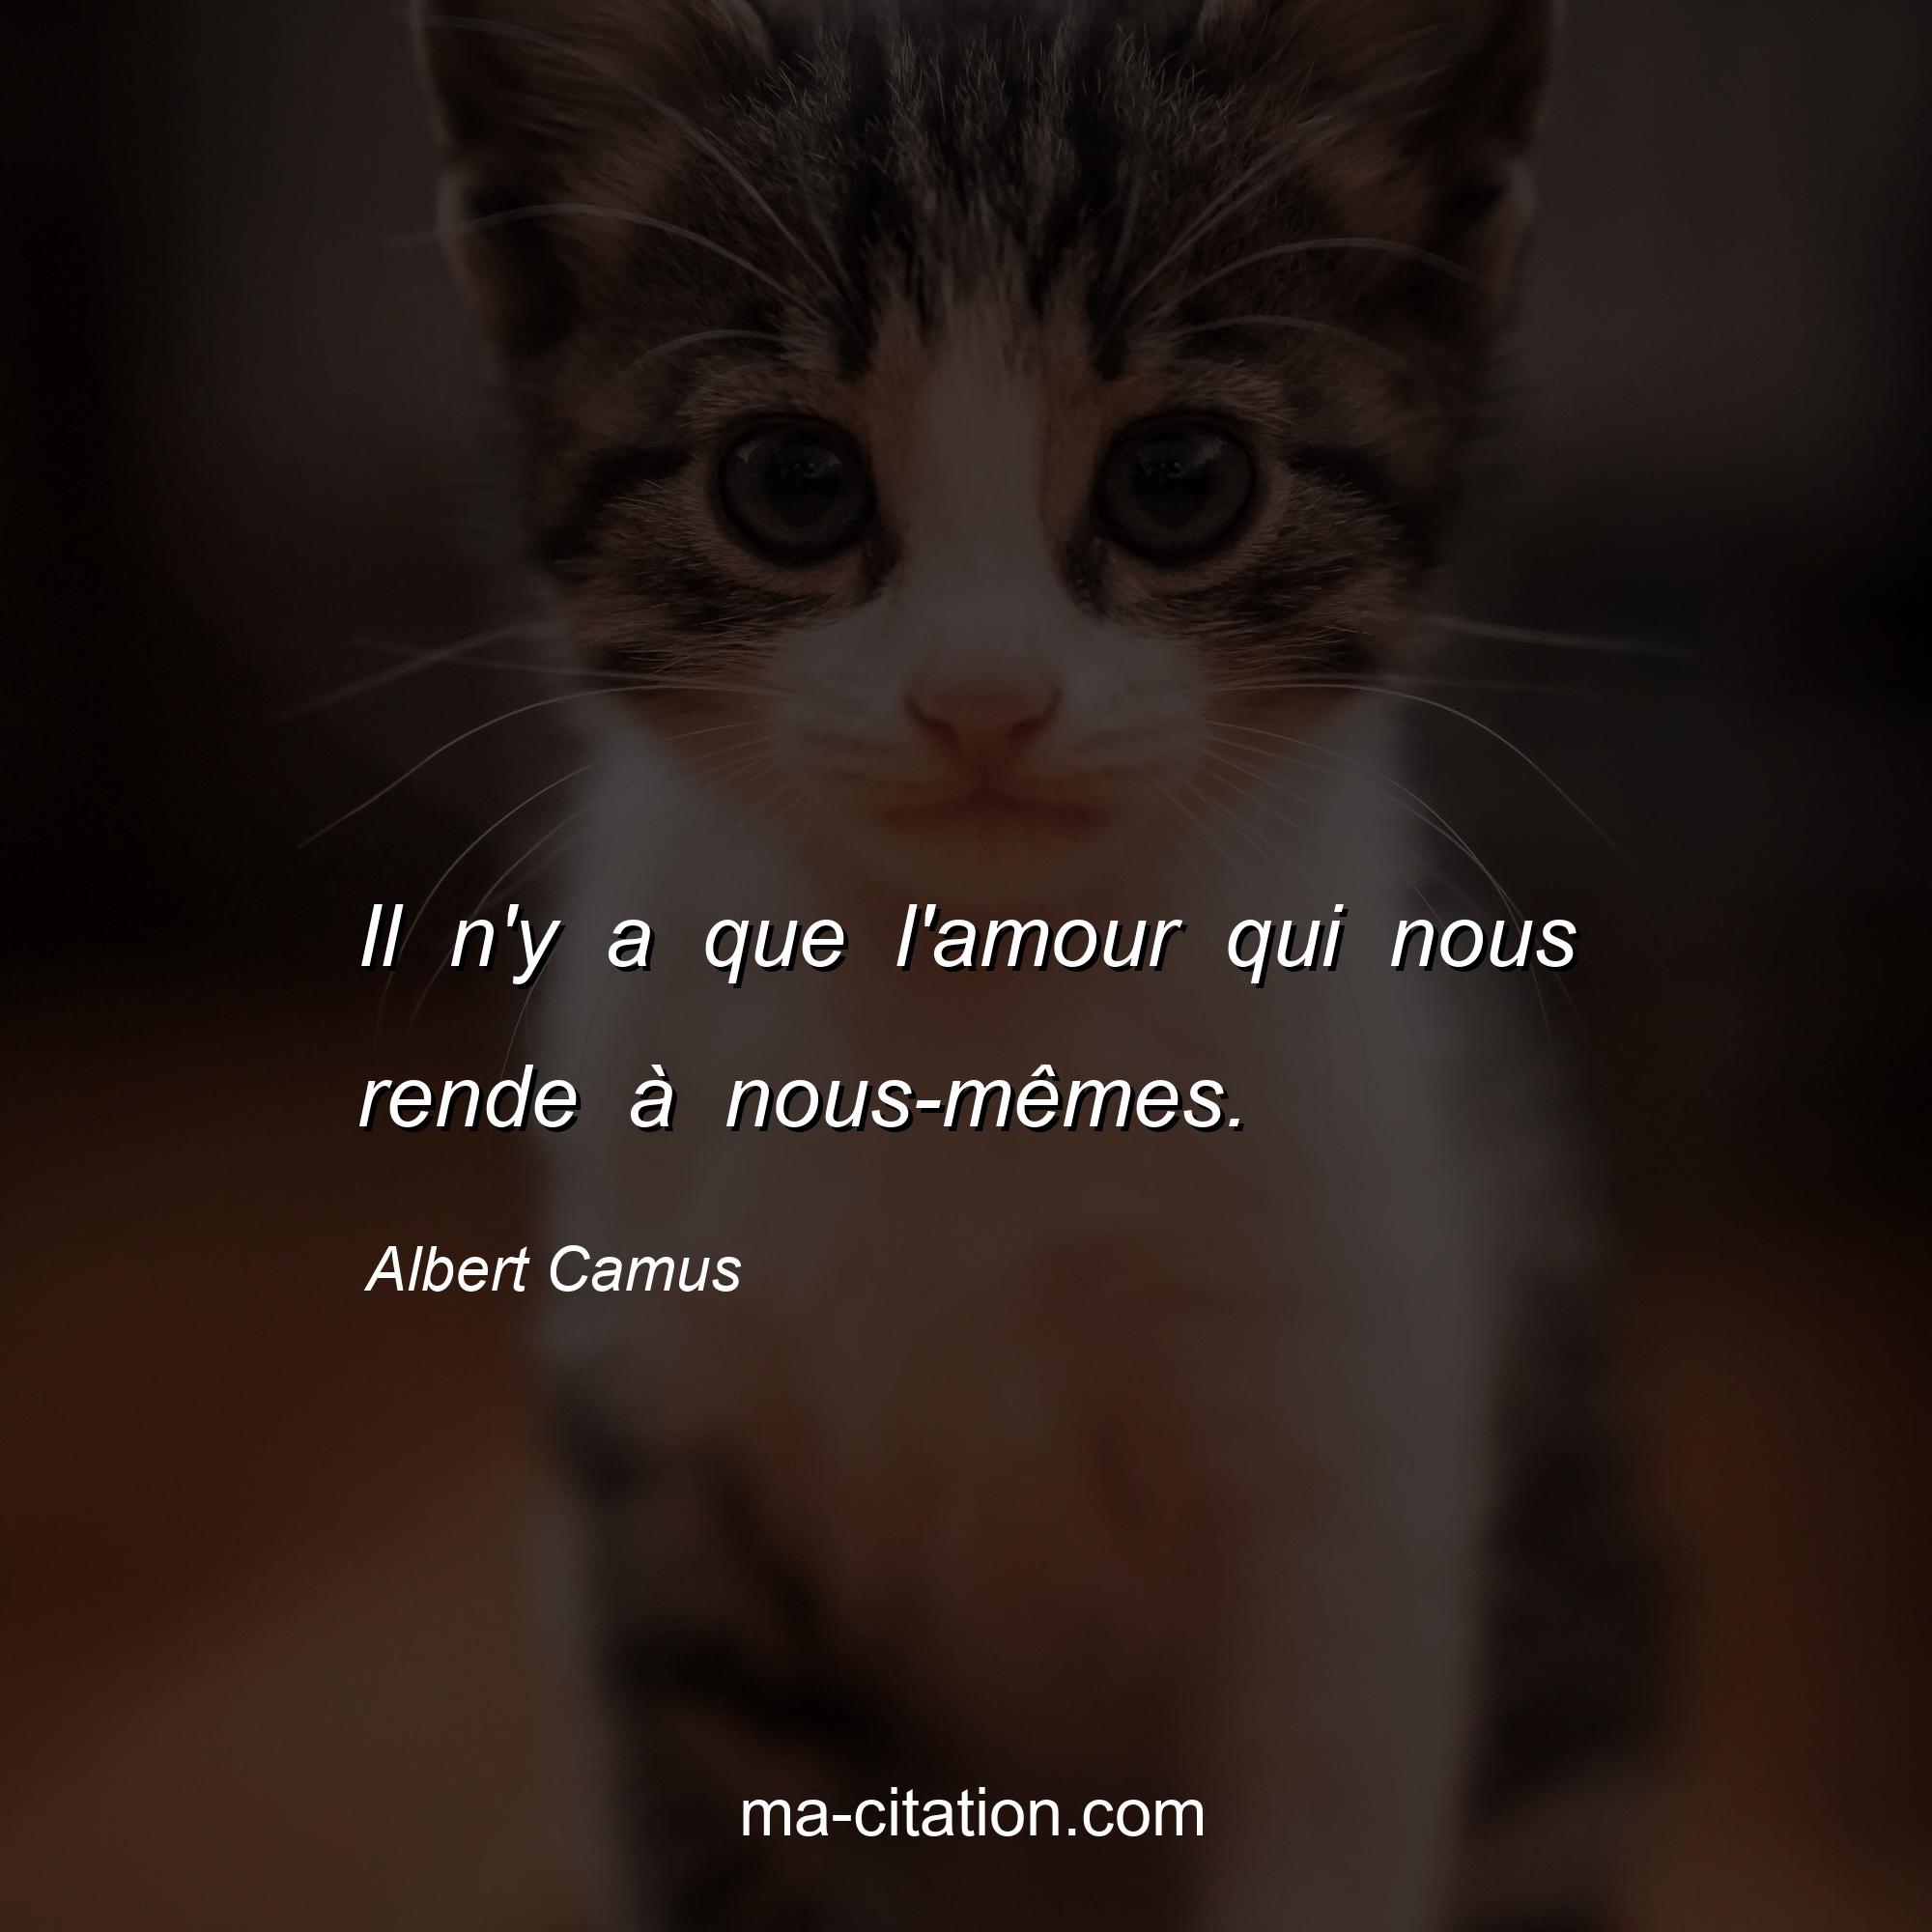 Albert Camus : Il n'y a que l'amour qui nous rende à nous-mêmes.